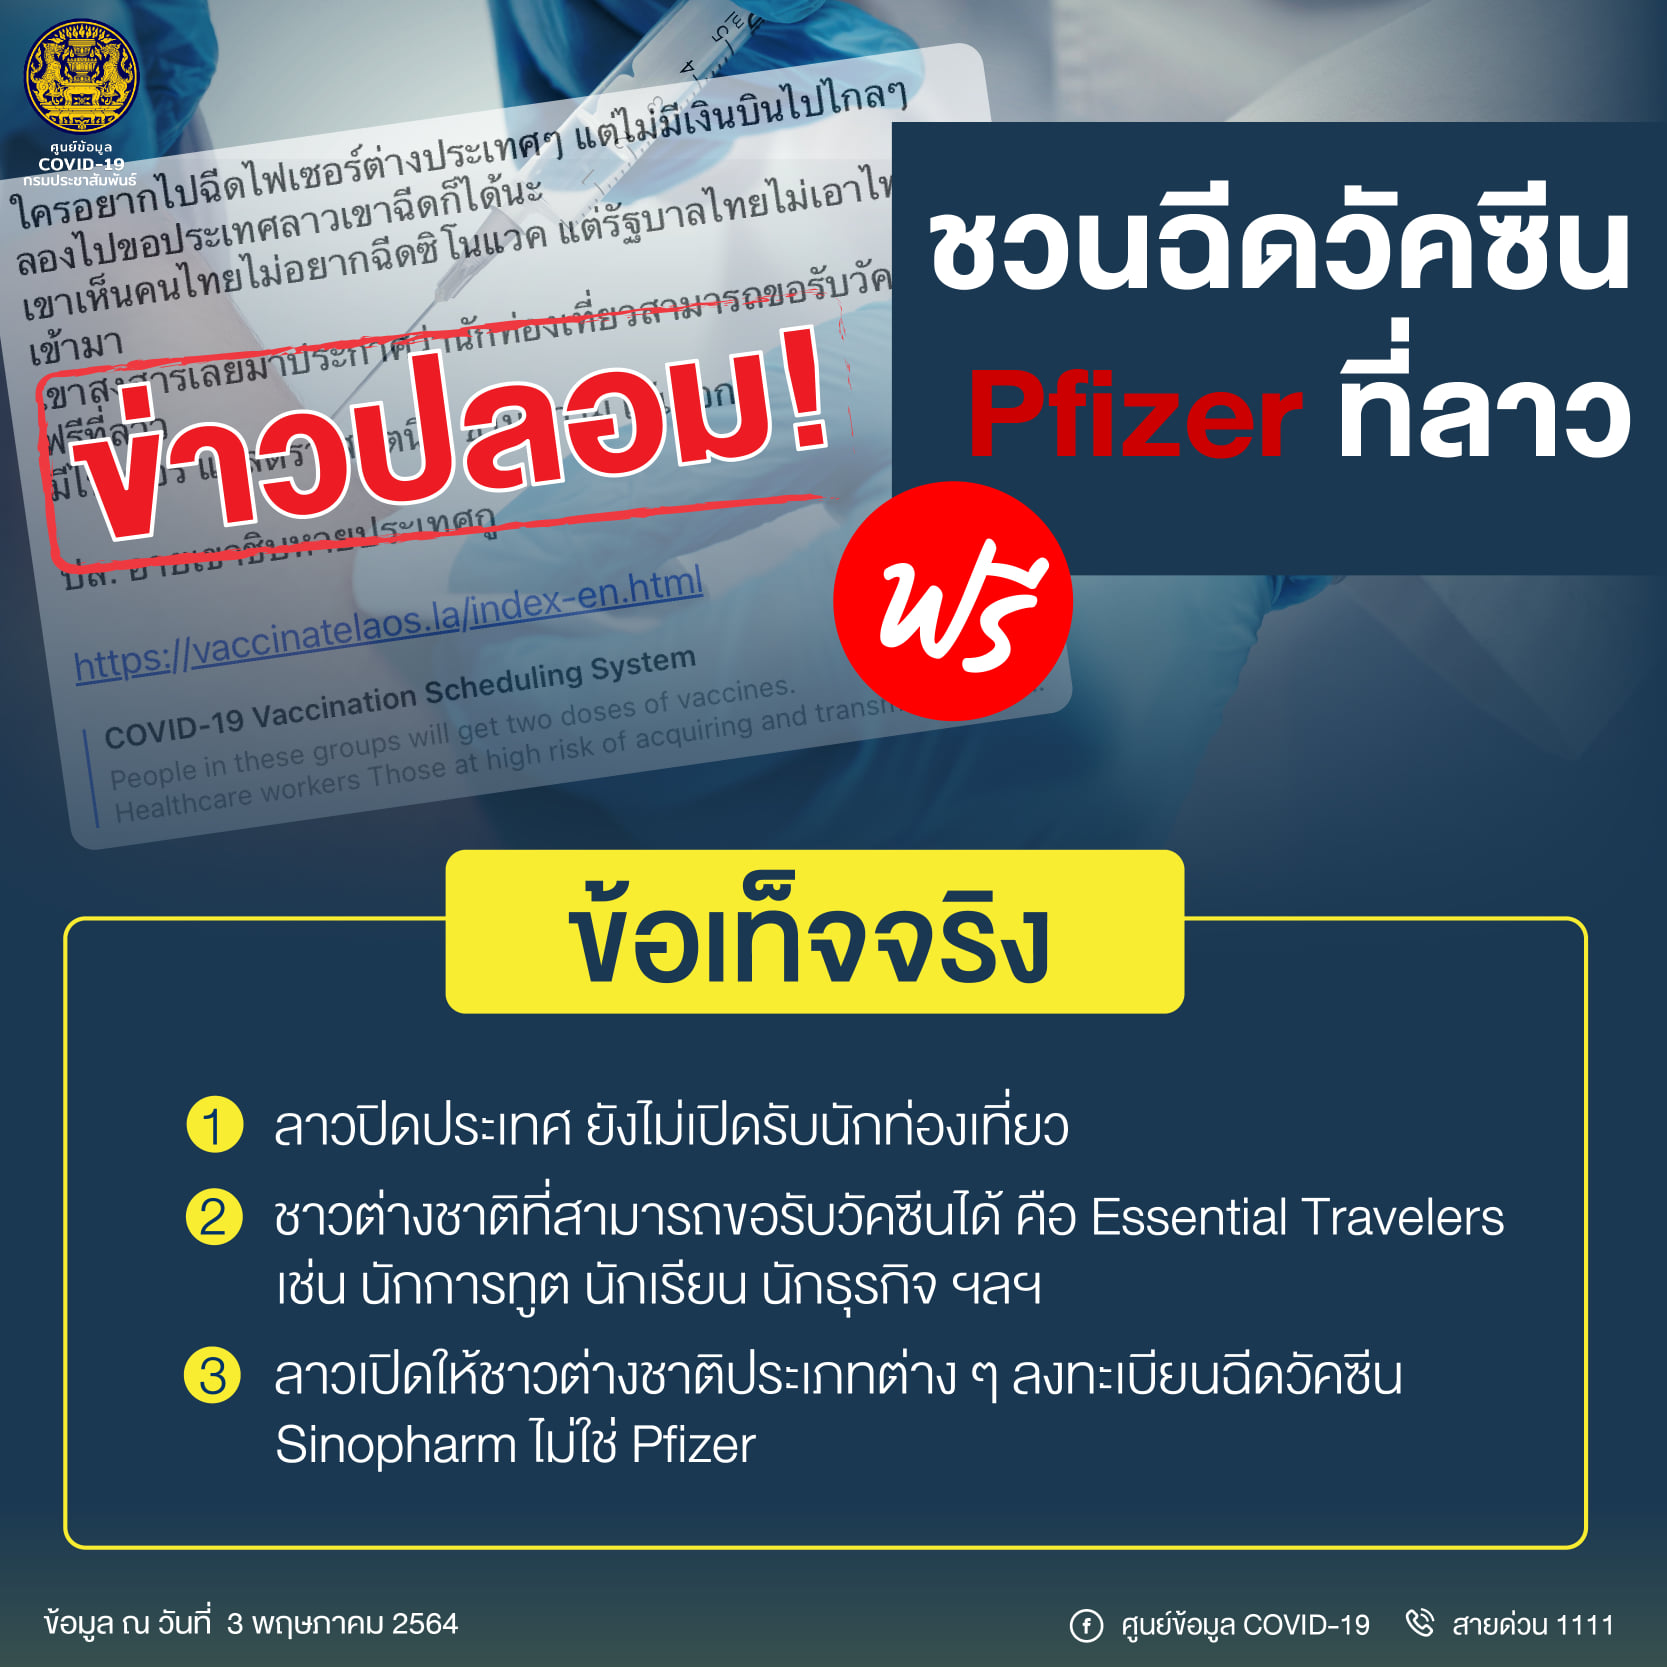 ข่าวปลอม! ชวนคนไทยฉีดวัคซีนต้านโควิด Pfizer ที่ สปป.ลาวฟรี